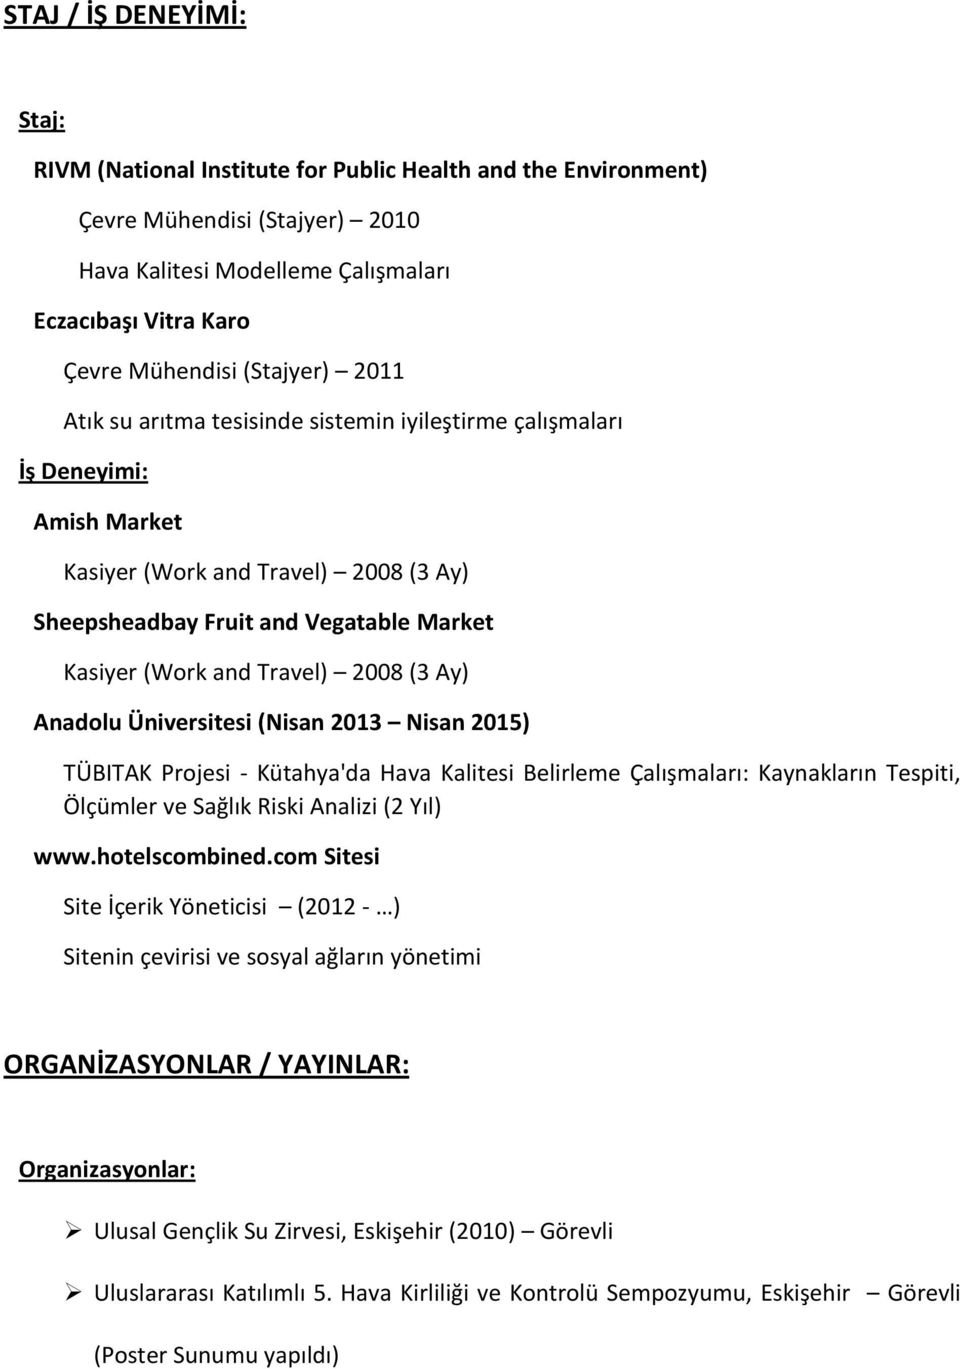 Travel) 2008 (3 Ay) Anadolu Üniversitesi (Nisan 2013 Nisan 2015) TÜBITAK Projesi - Kütahya'da Hava Kalitesi Belirleme Çalışmaları: Kaynakların Tespiti, Ölçümler ve Sağlık Riski Analizi (2 Yıl) www.